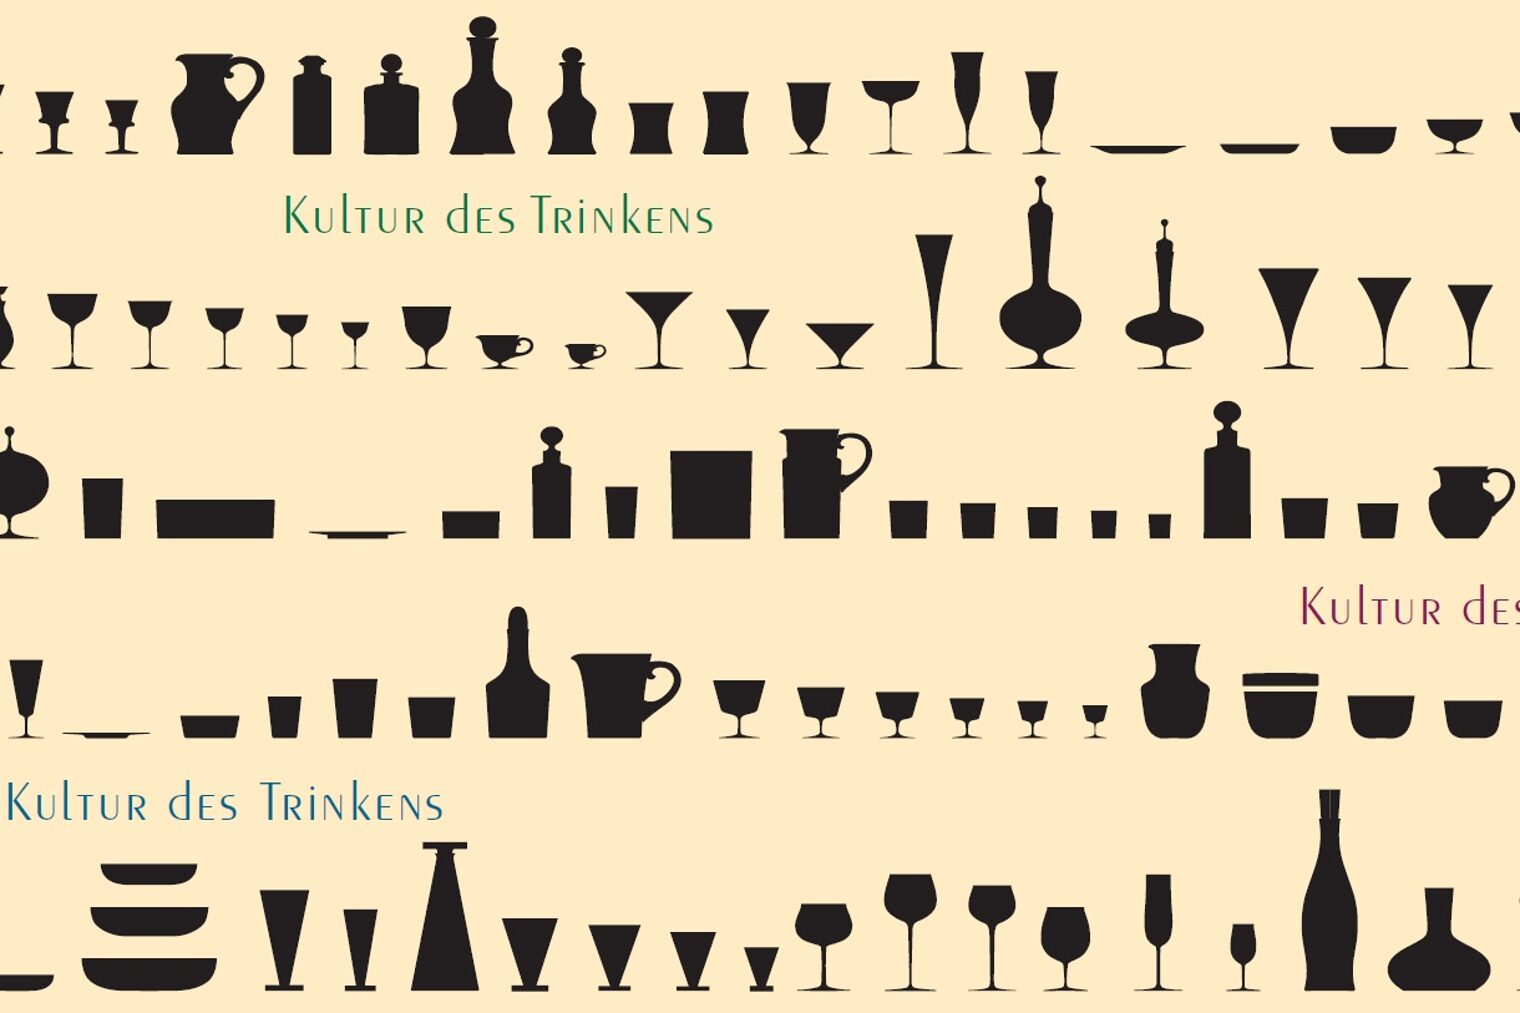 Galerie Handwerk - Titelbild "Kultur des Trinkens"